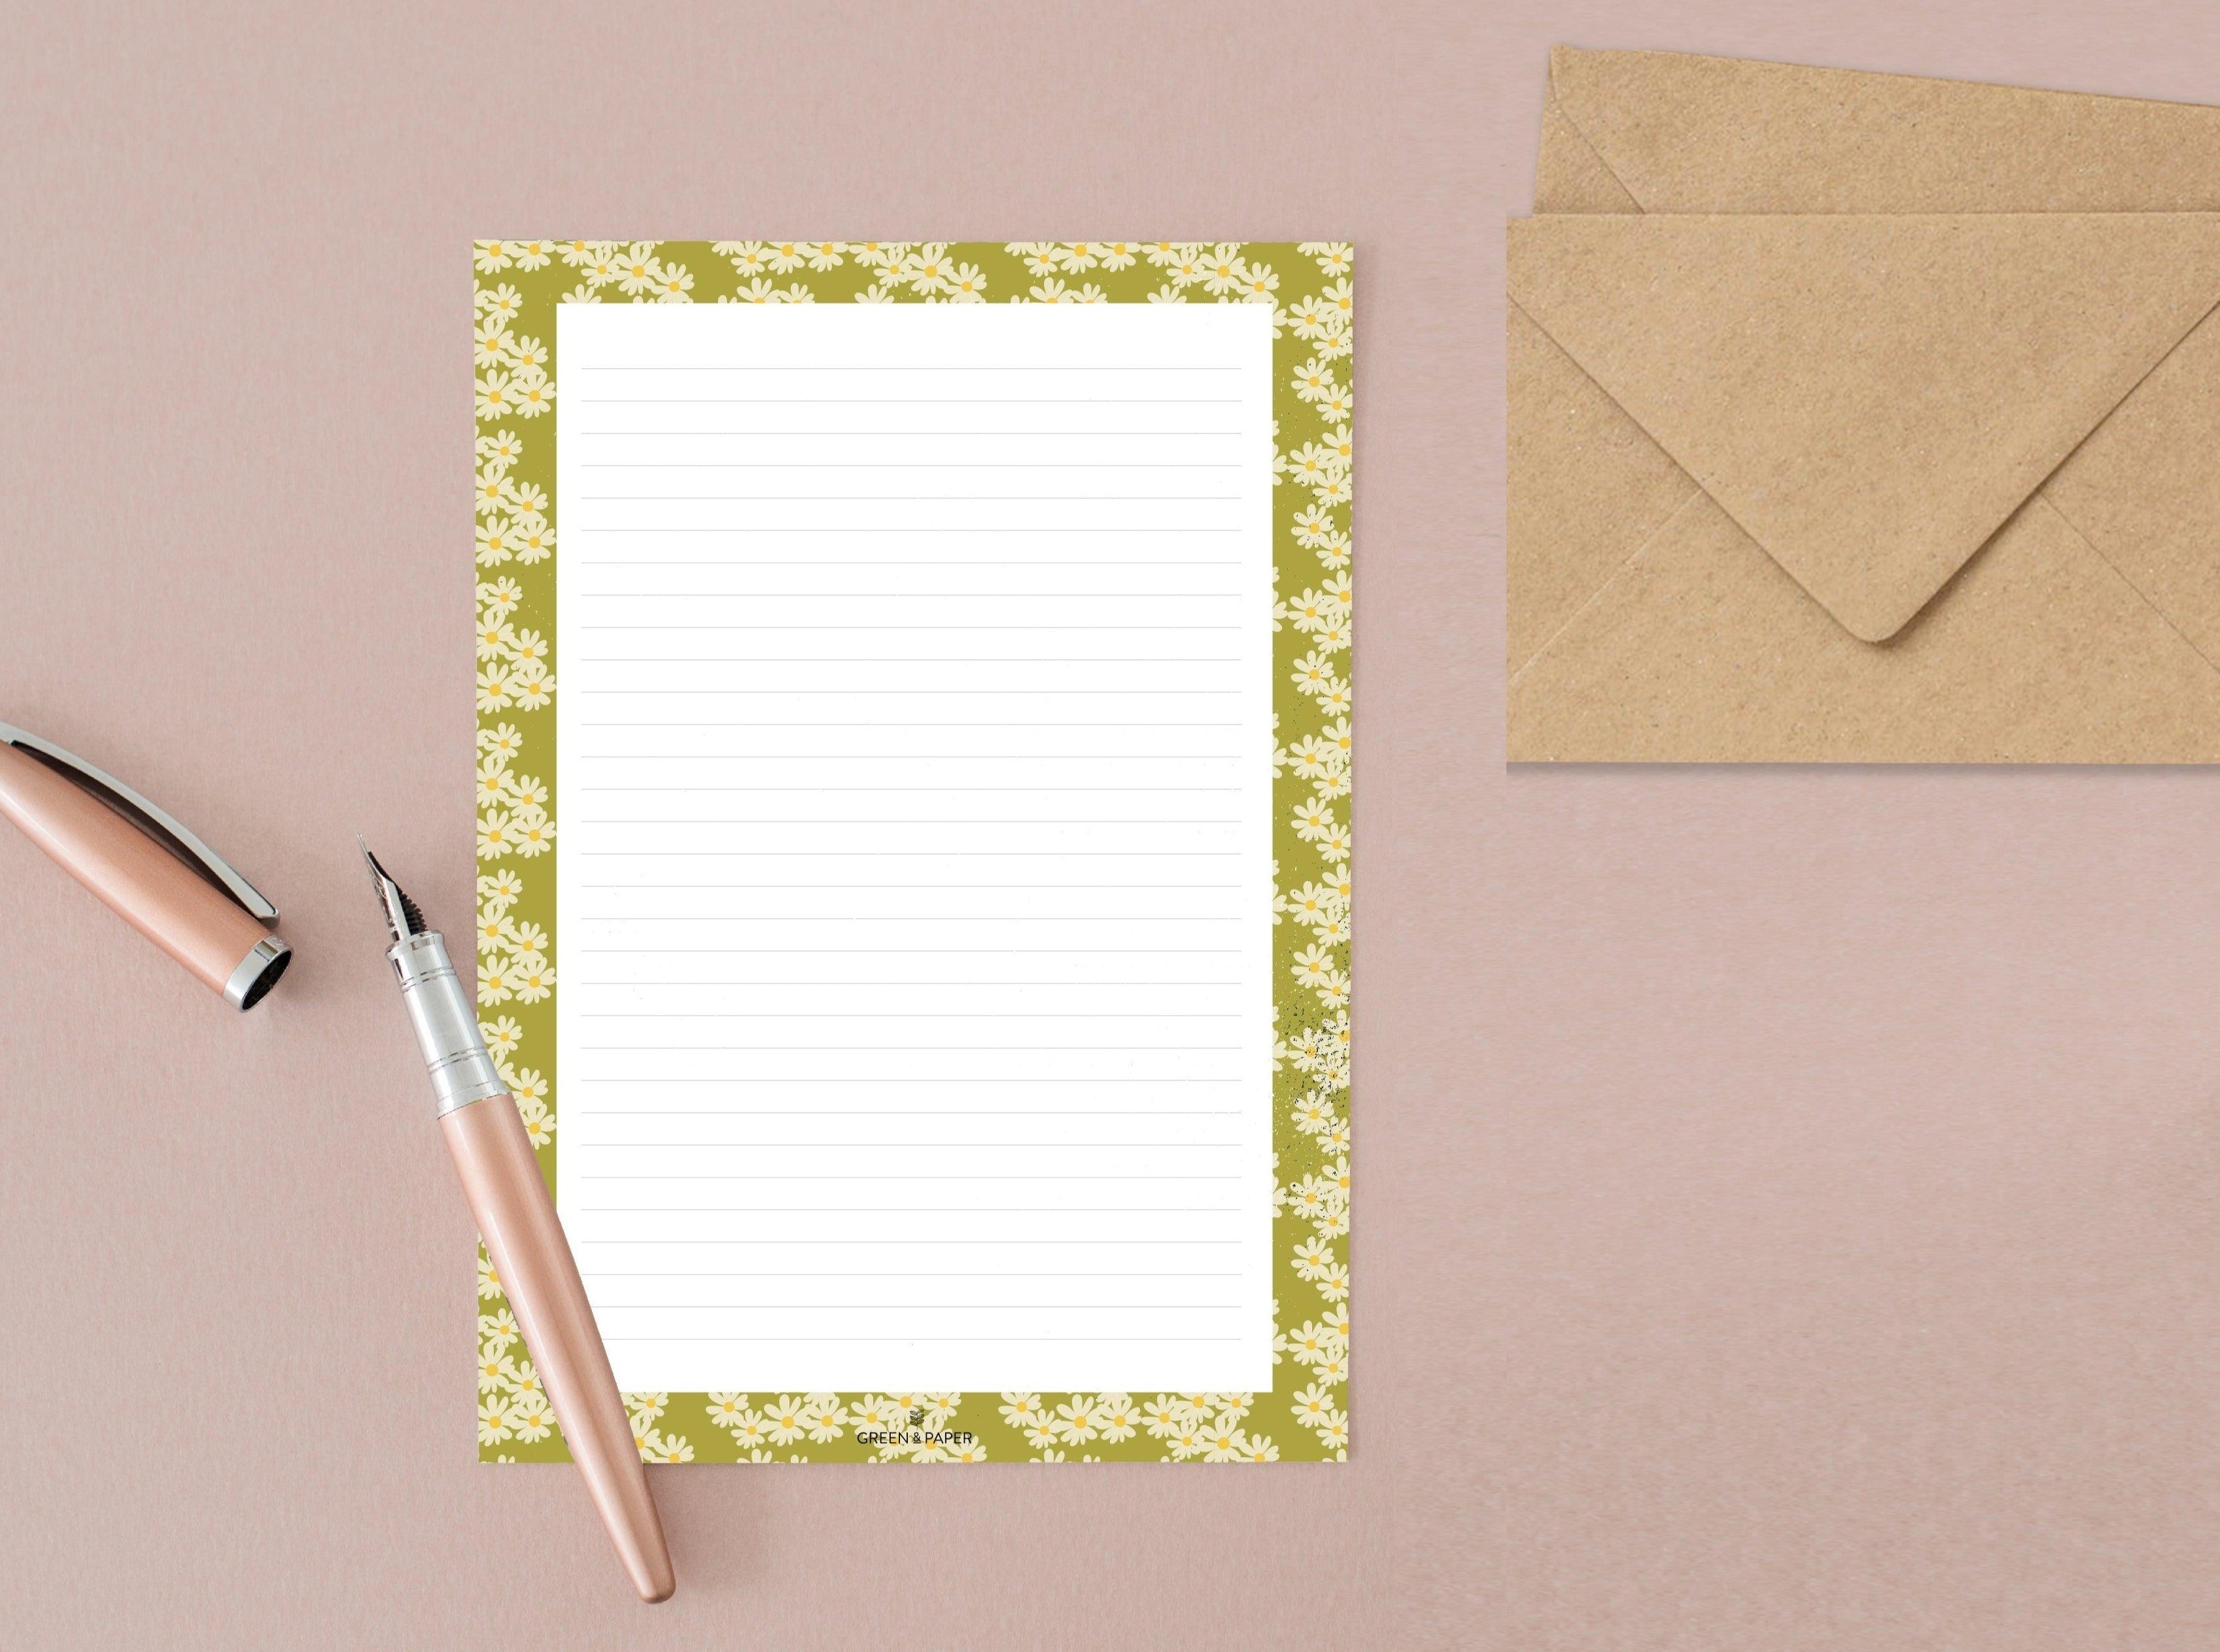 Papiers à lettre fleurs vertes – Green and Paper